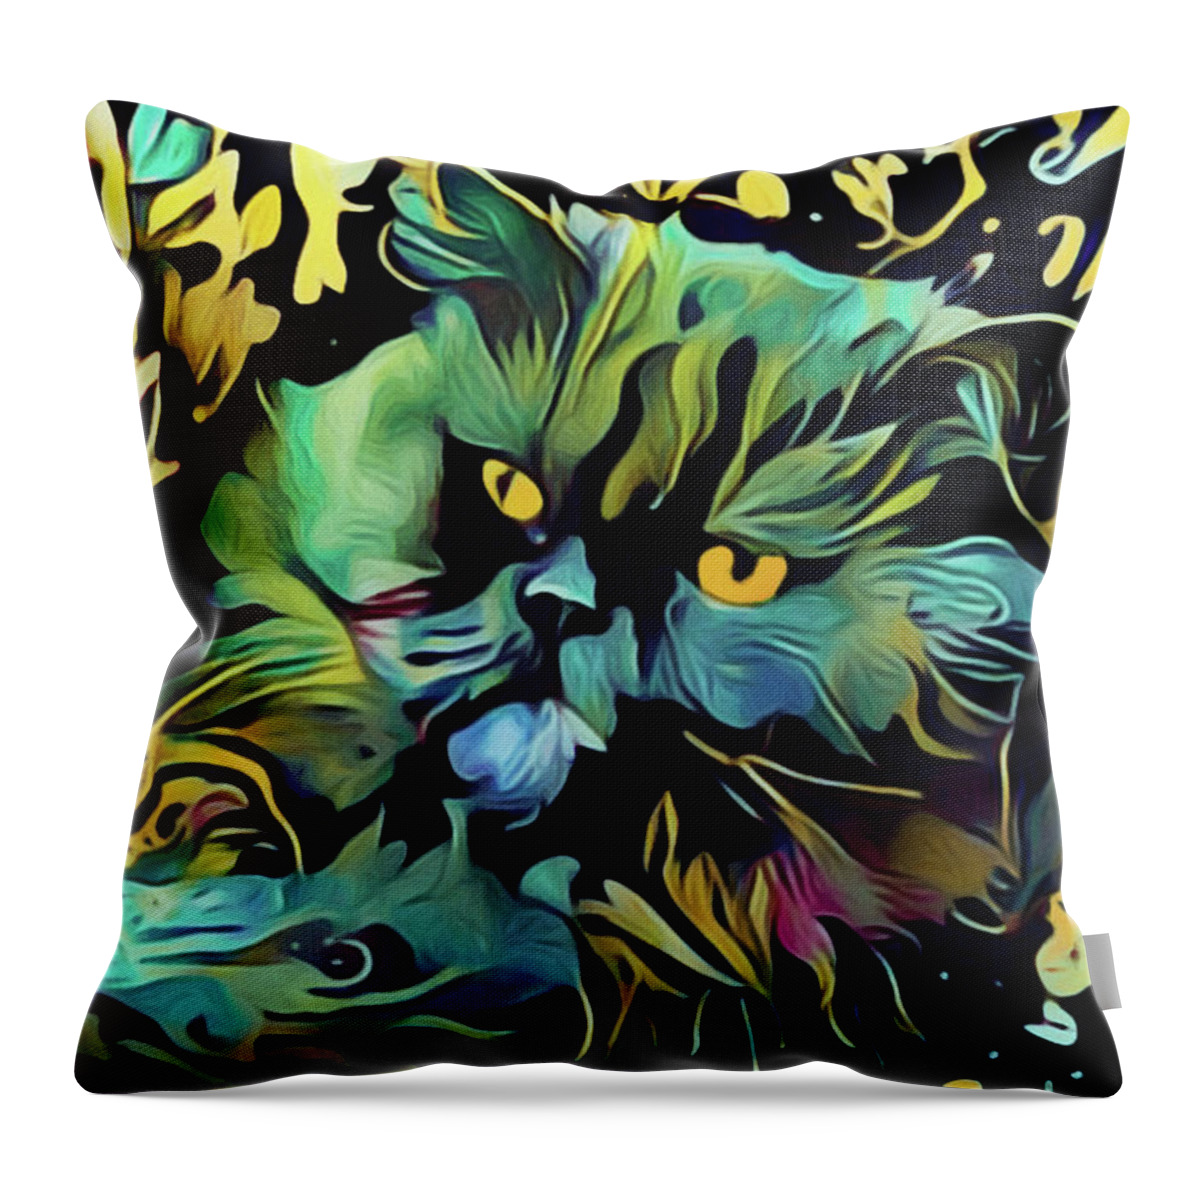 Cat Throw Pillow featuring the digital art Macavity by Susan Maxwell Schmidt